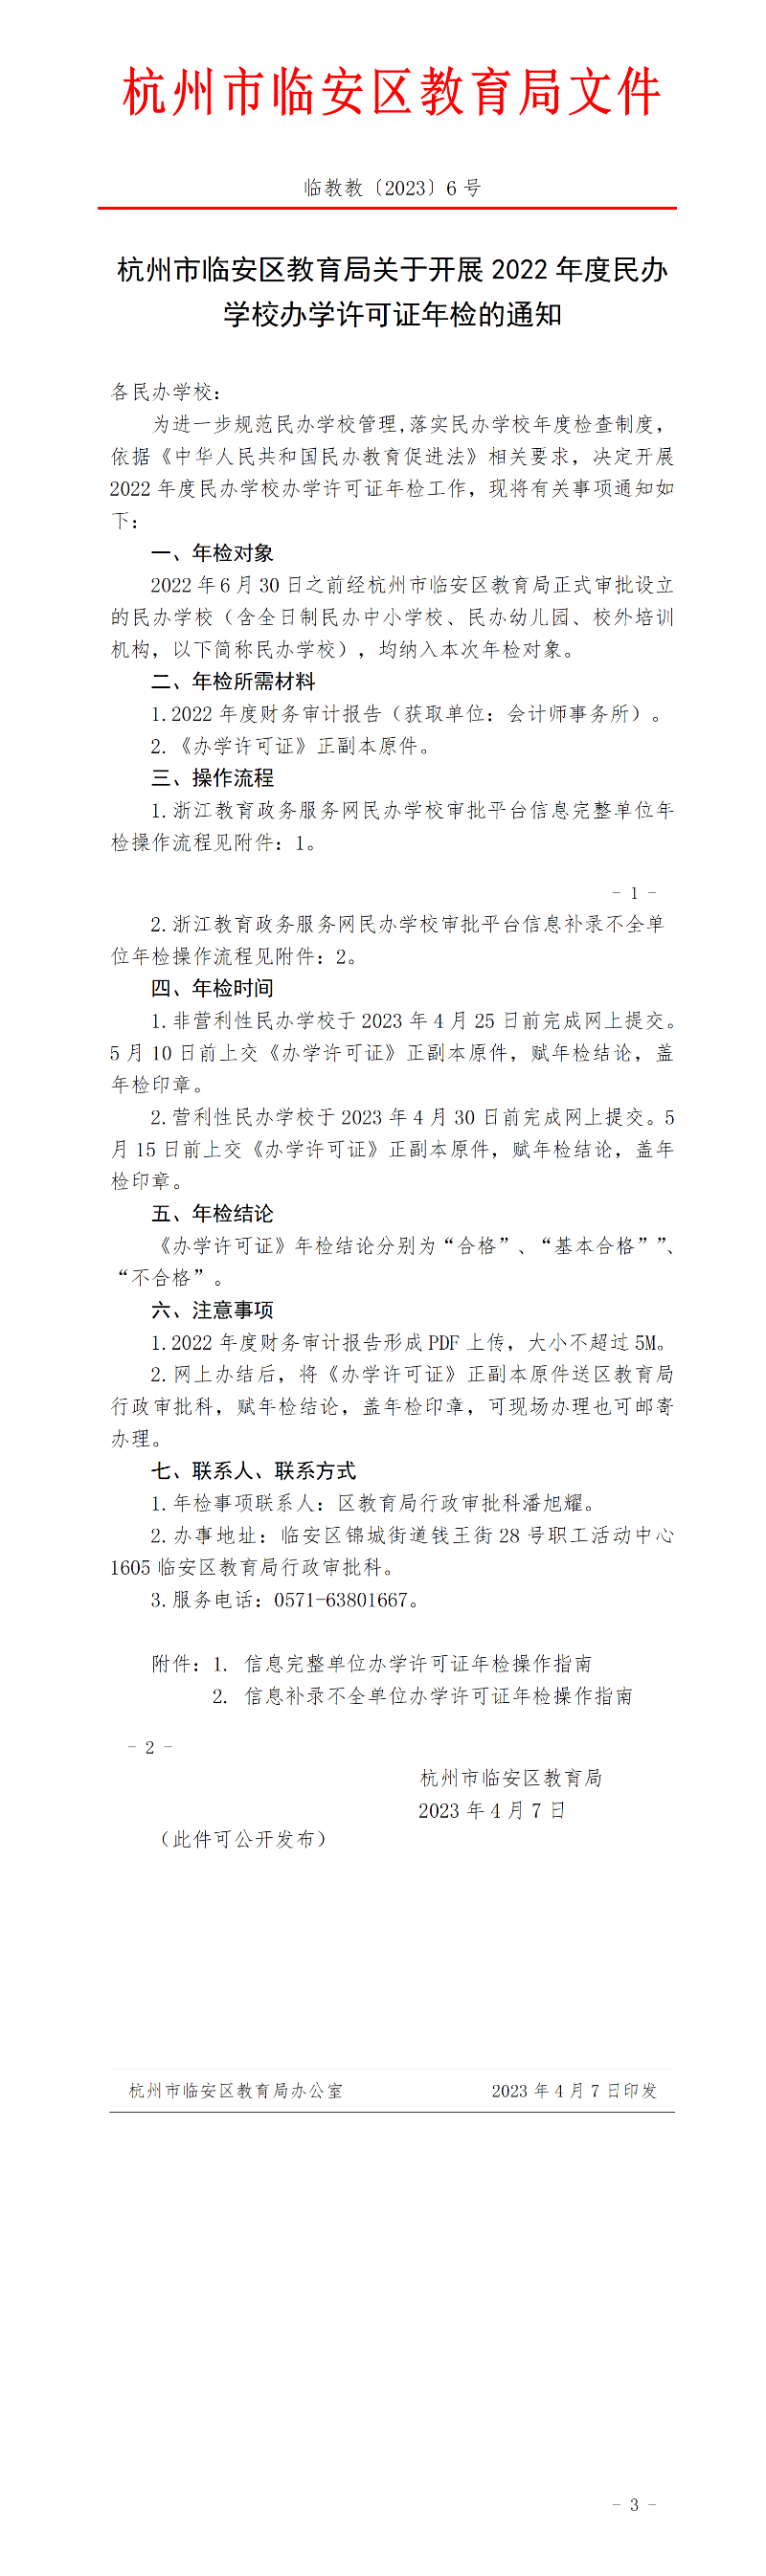 杭州市临安区教育局关于开展2022年度民办学校办学许可证年检的通知.png